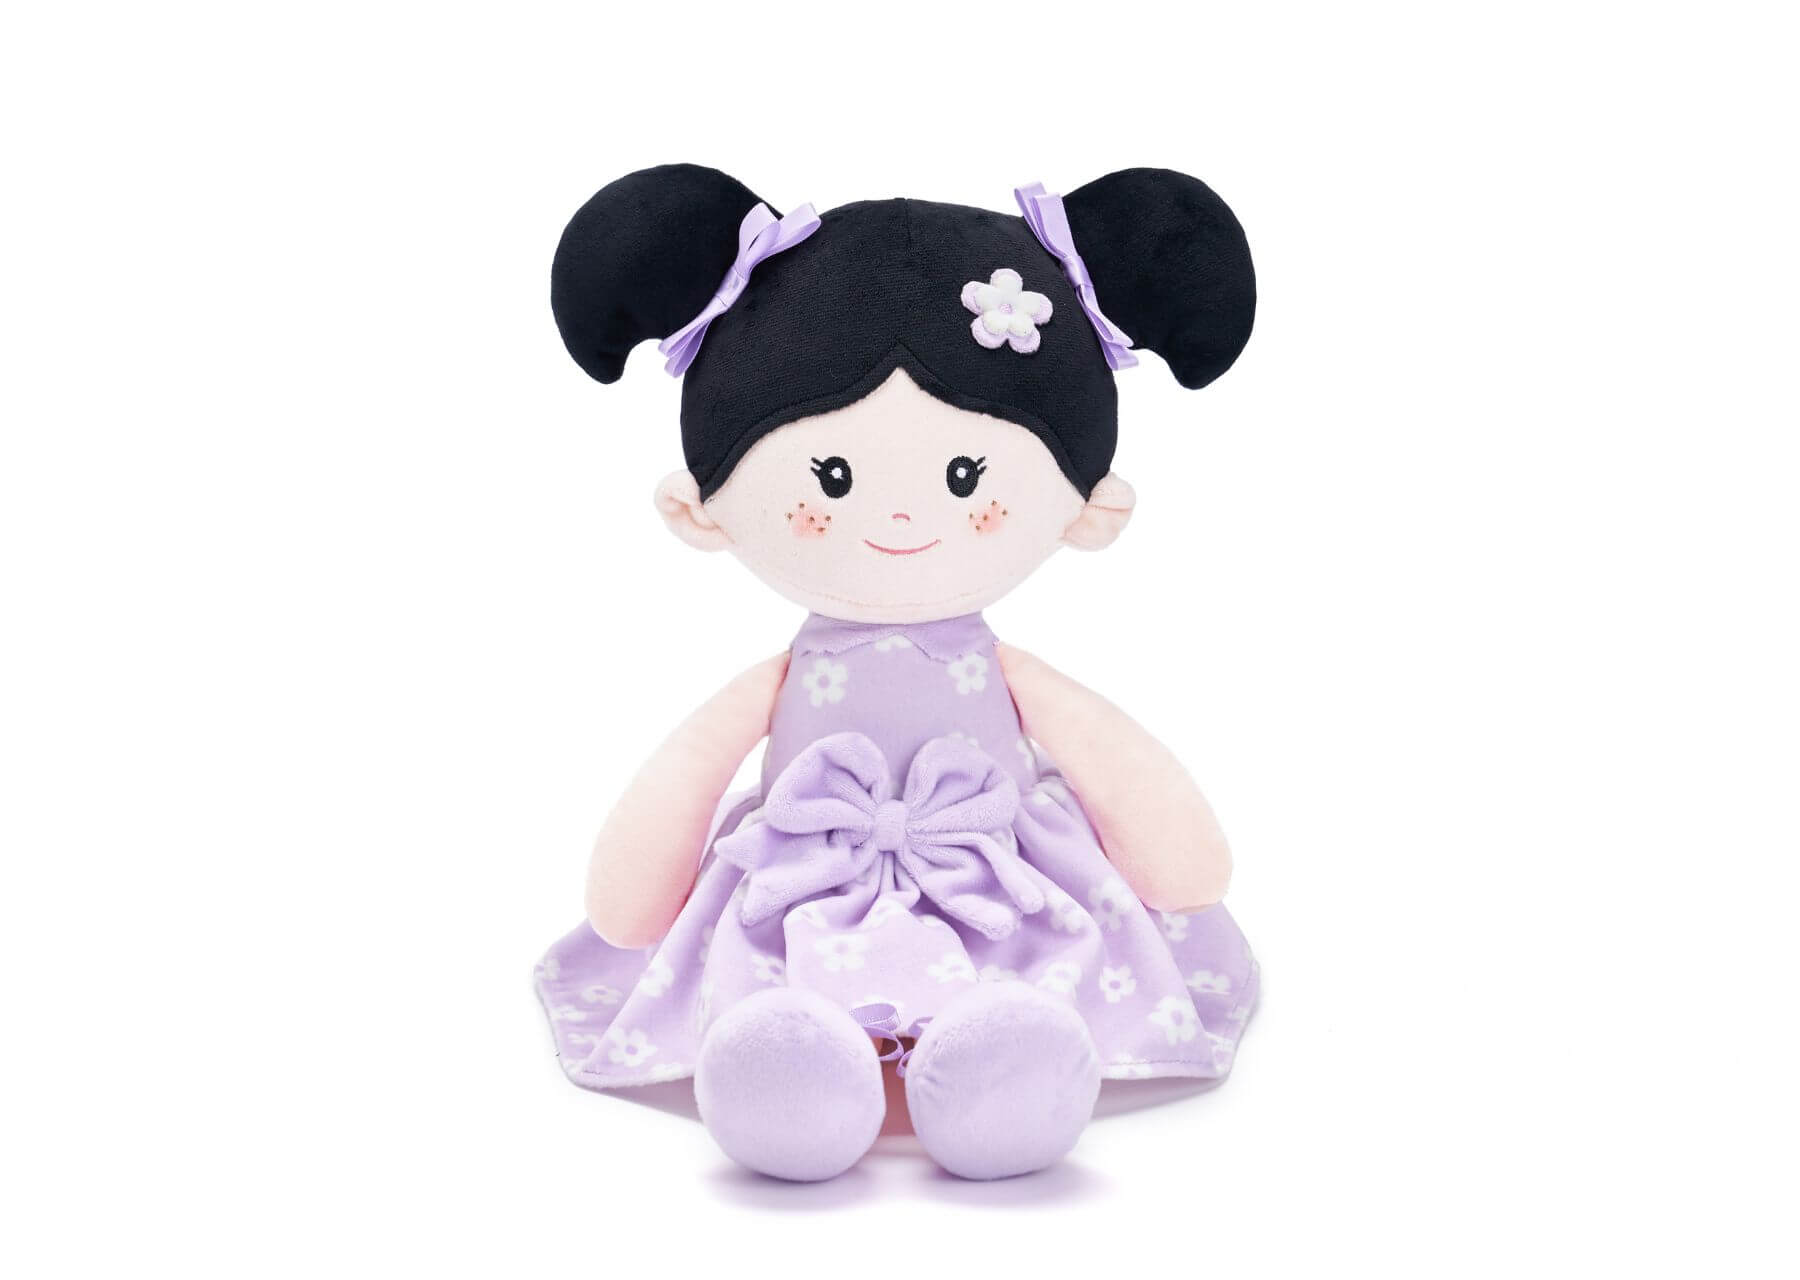 Personalized Christmas Gift Bundle - Leya Doll